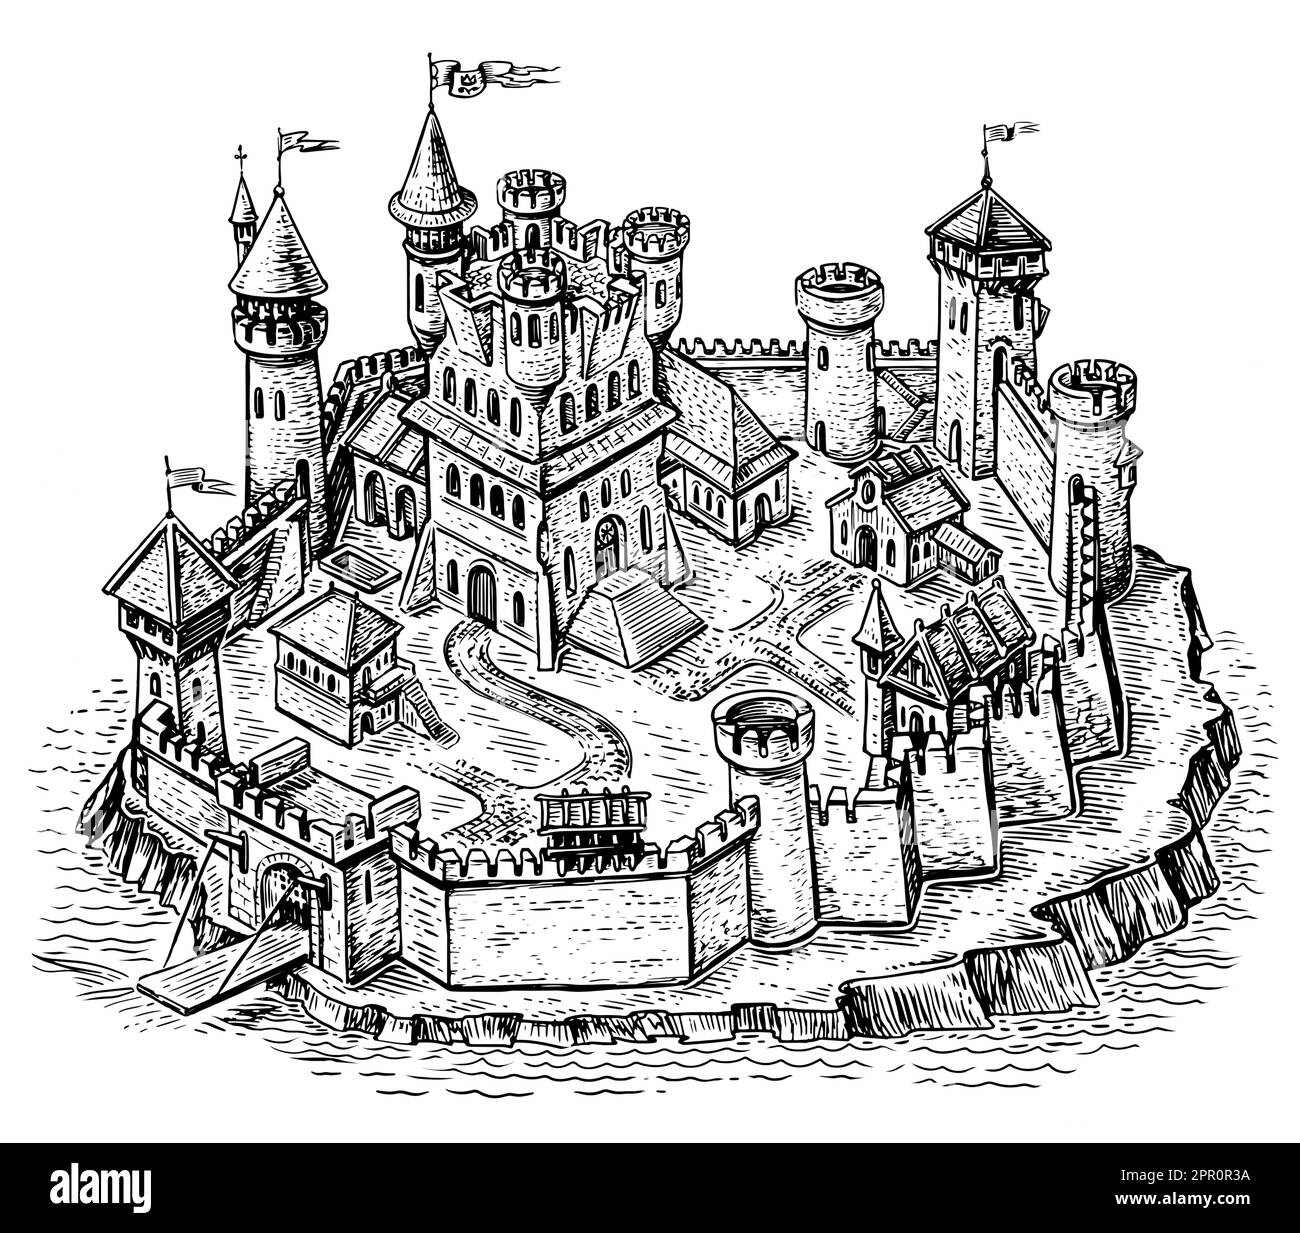 Ville médiévale. Château de pierre avec tours d'isométrie. Paysage urbain de style gravure vintage. Illustration de l'esquisse Banque D'Images